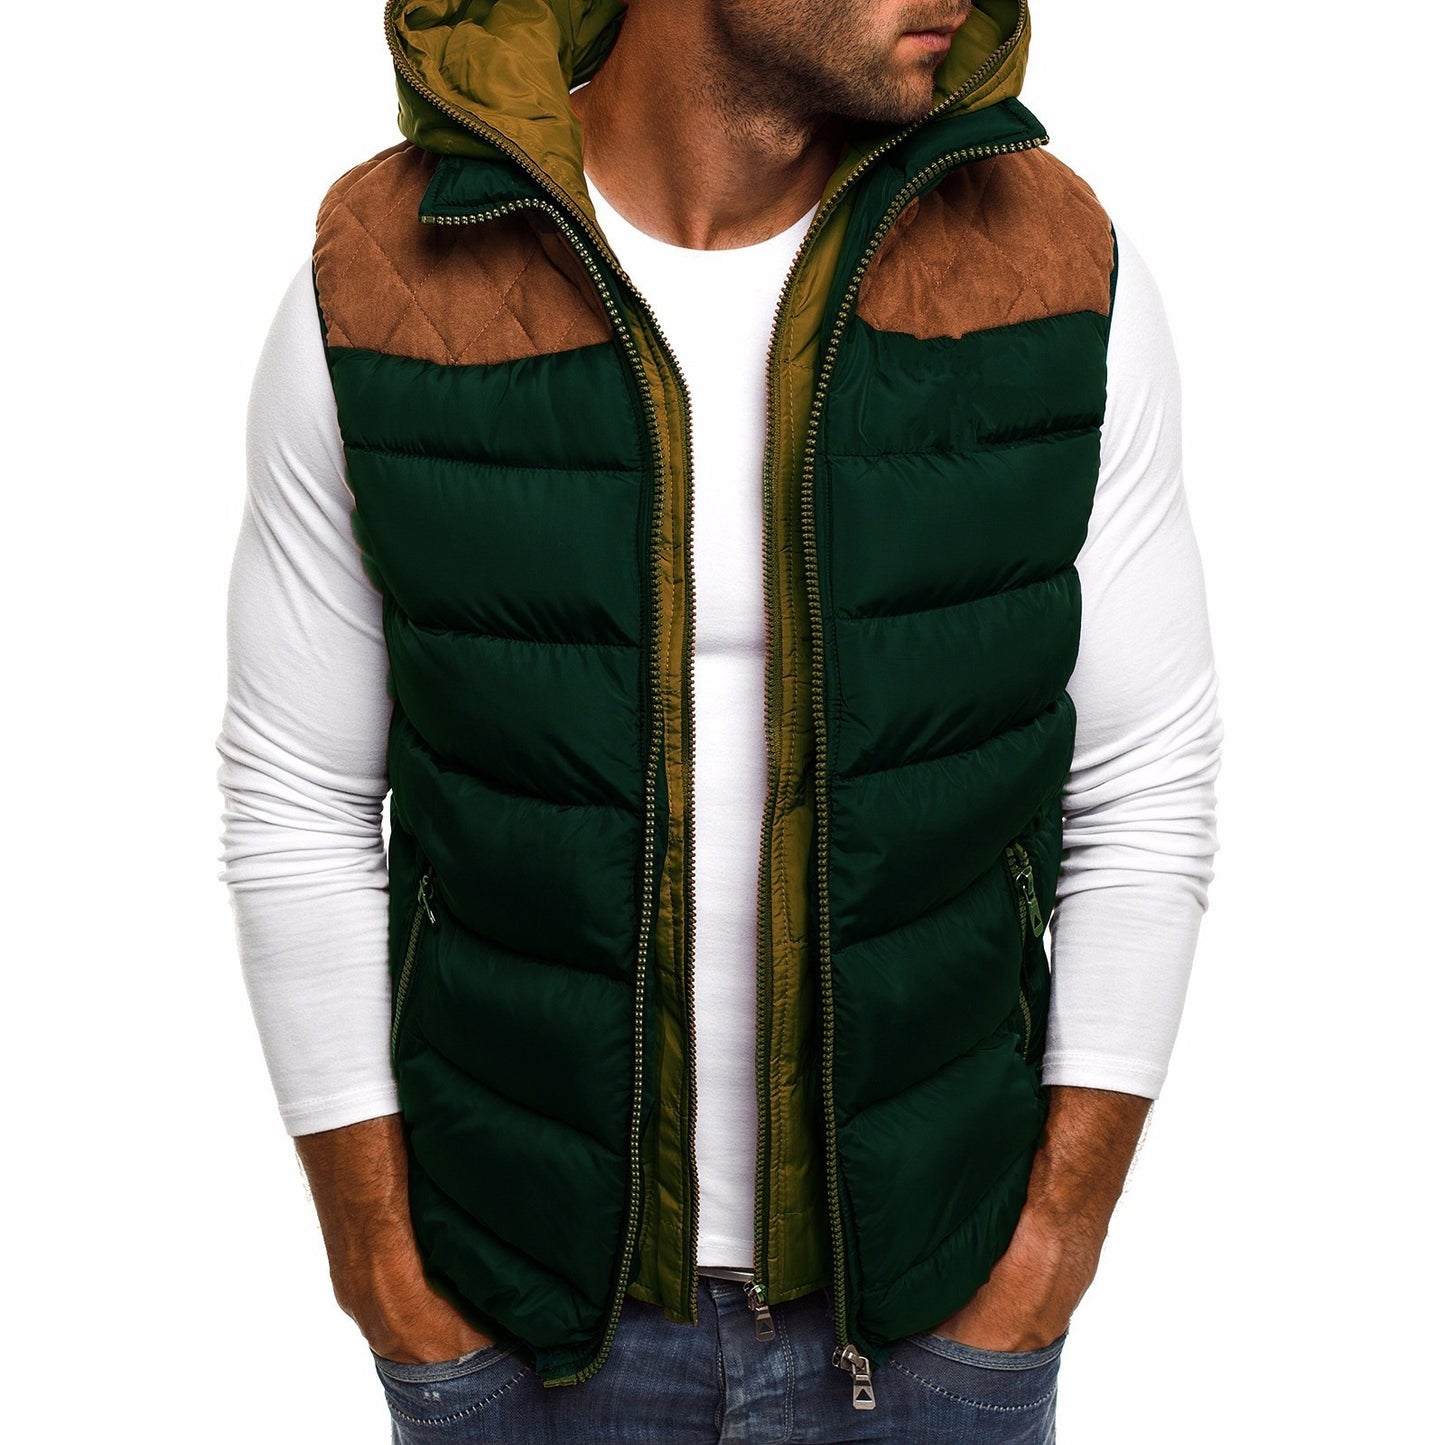 Men's hooded cotton vest